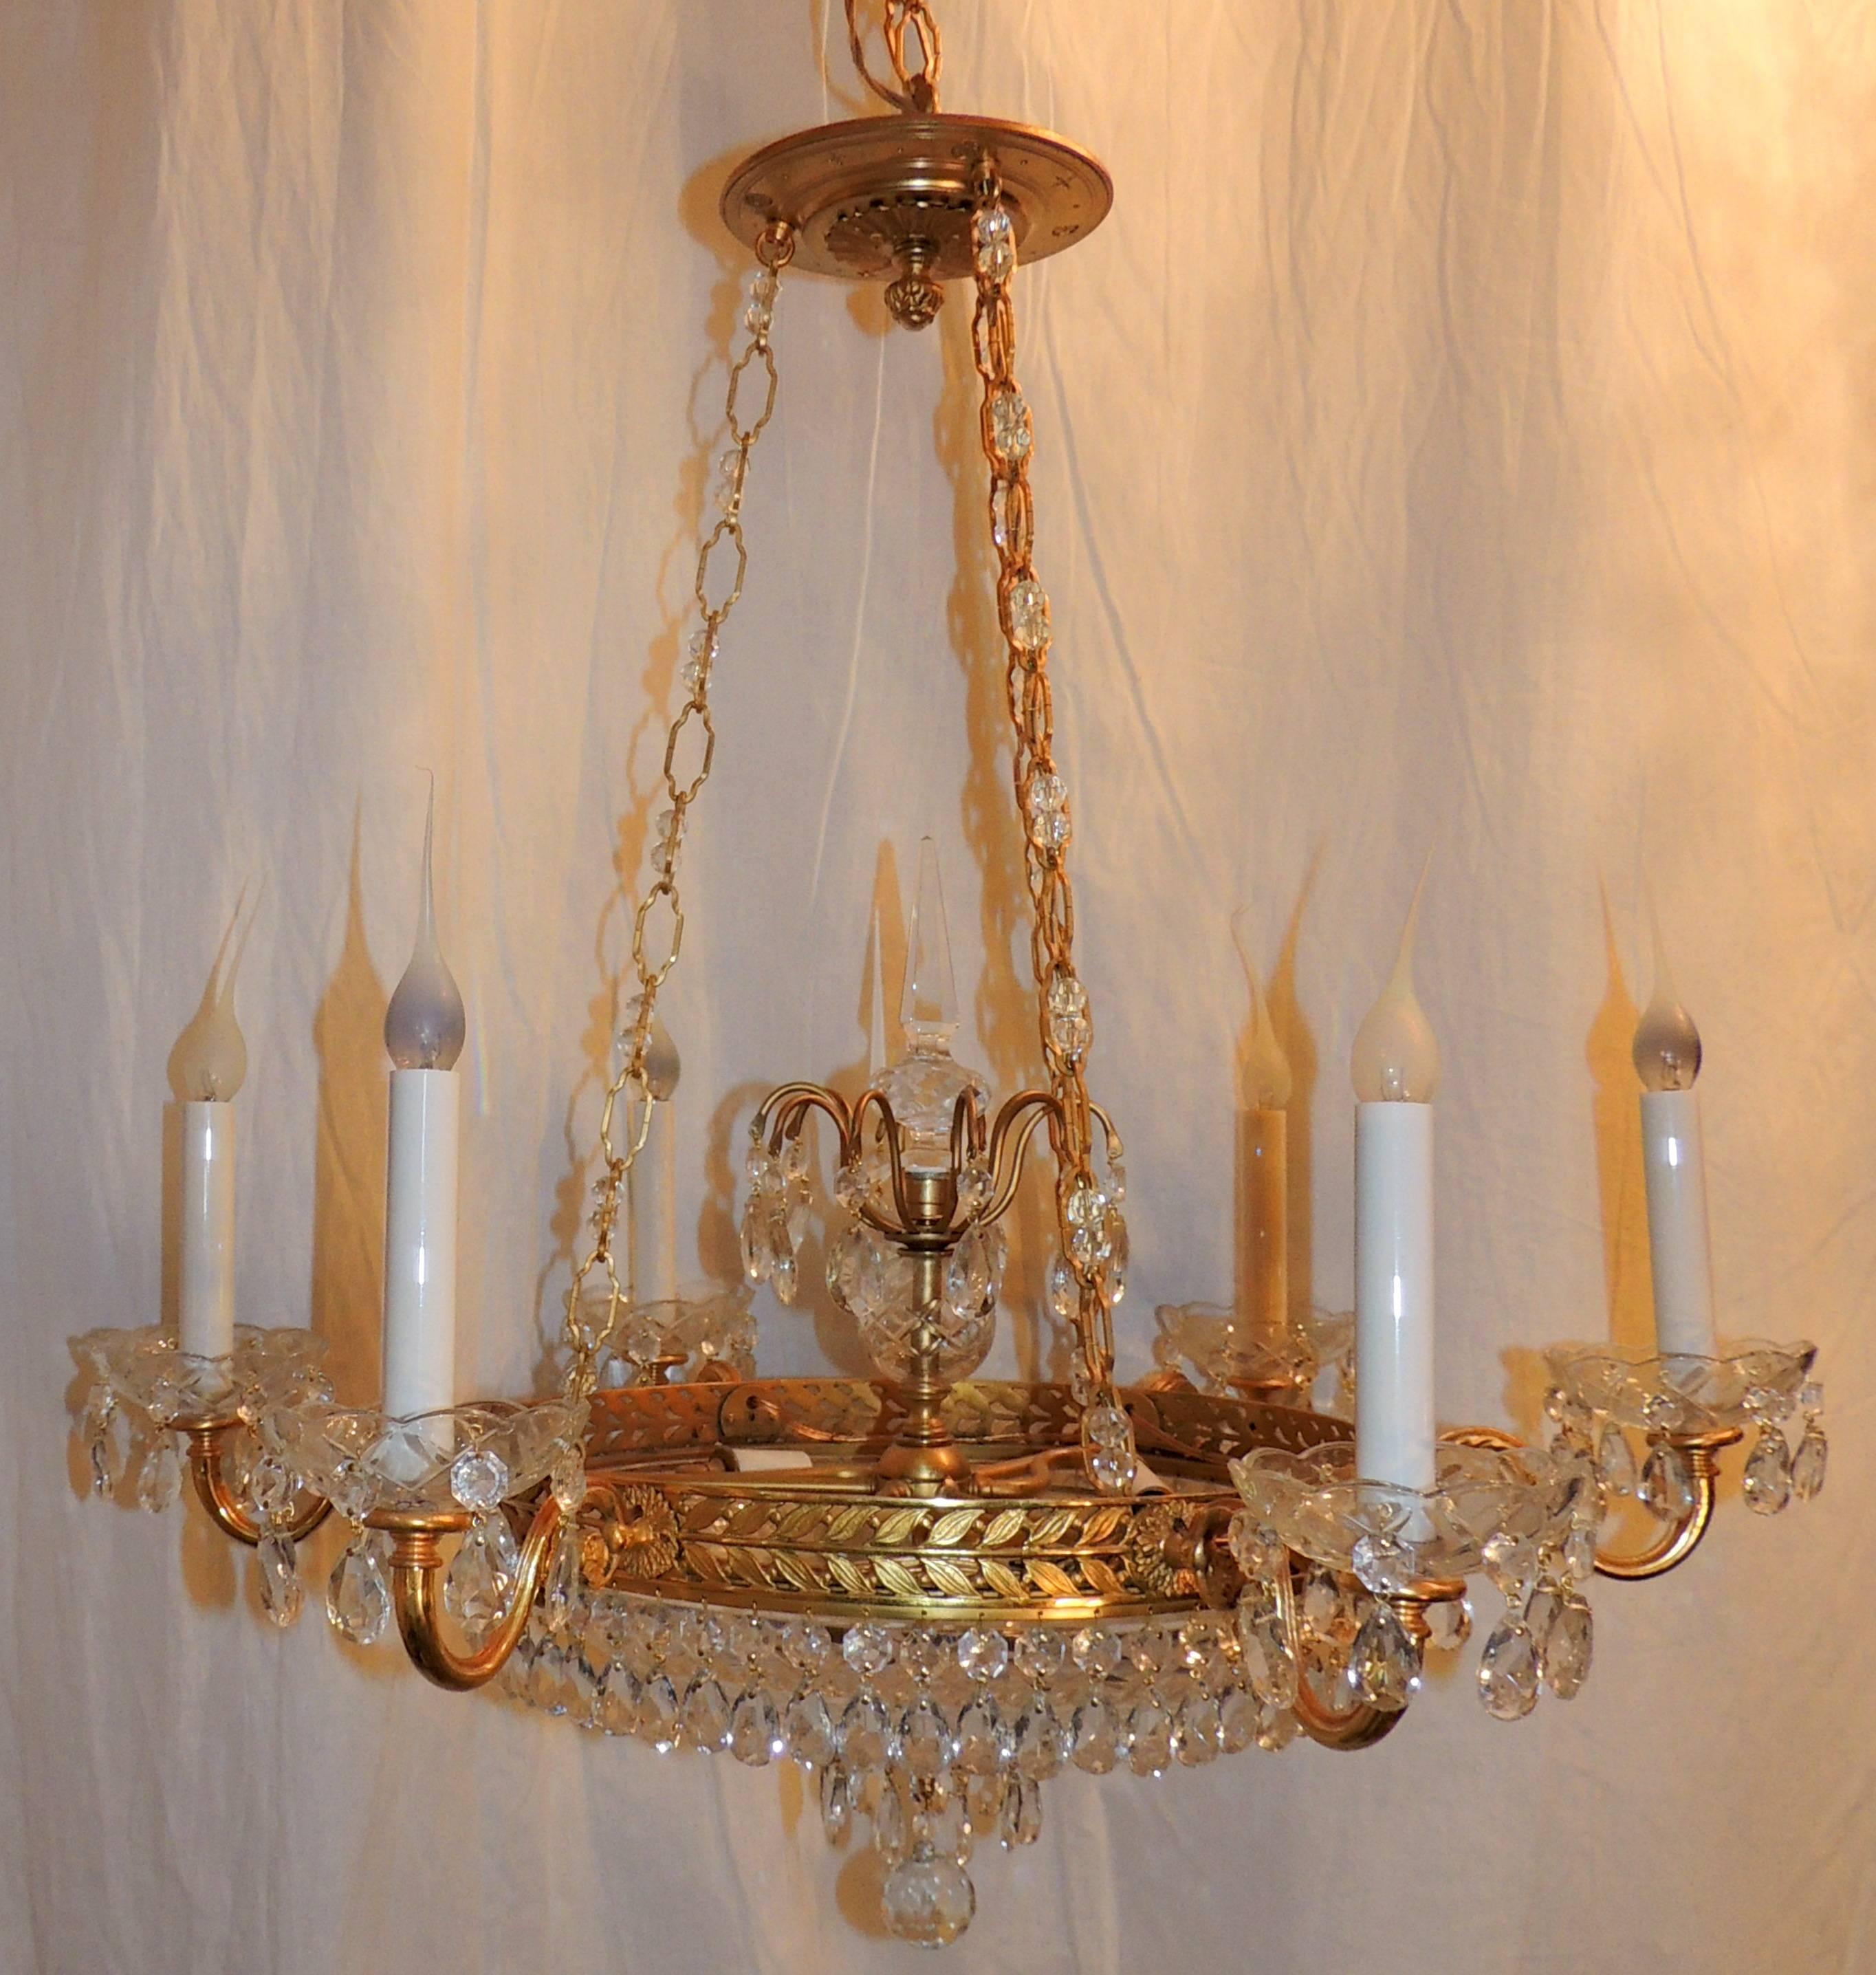 Magnifique lustre Empire en bronze doré de style néoclassique français, à six lumières et trois lumières internes, en cristal taillé de la Baltique.